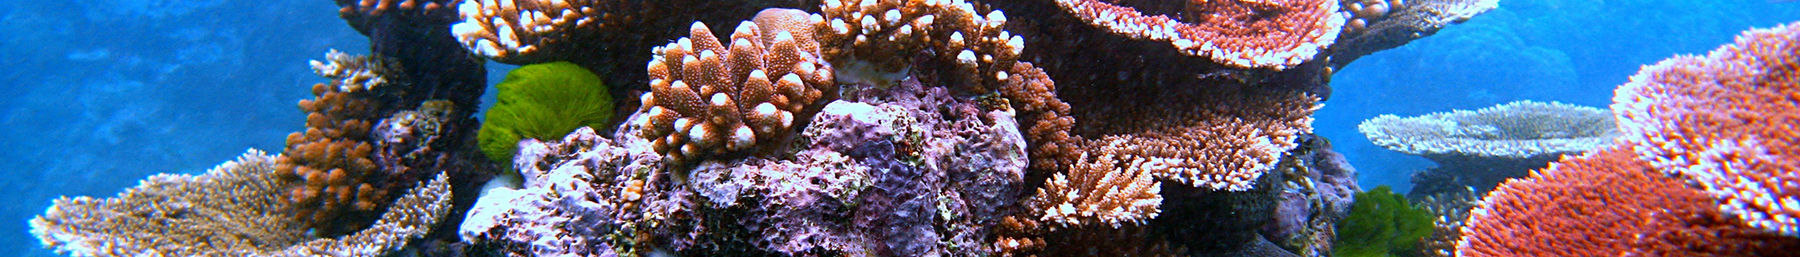 Flynn Reef, een gedeelte van het Great Barrier Reef bij Cairns, Queensland, Australië